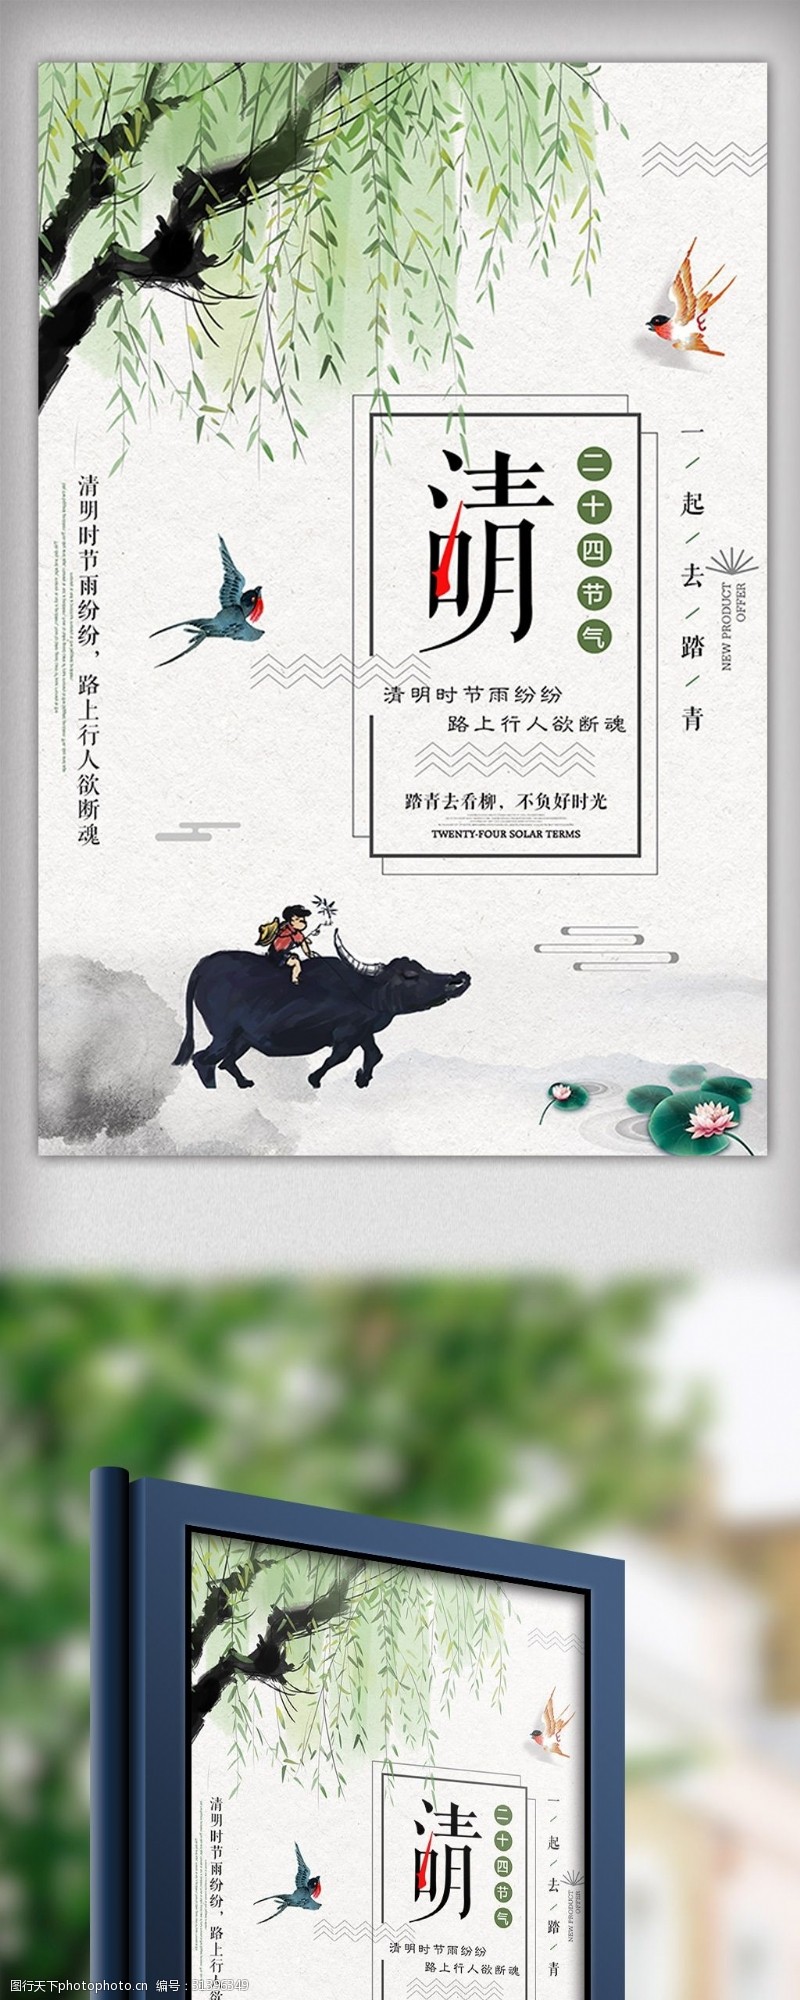 烟雨清明中国风清明节海报设计